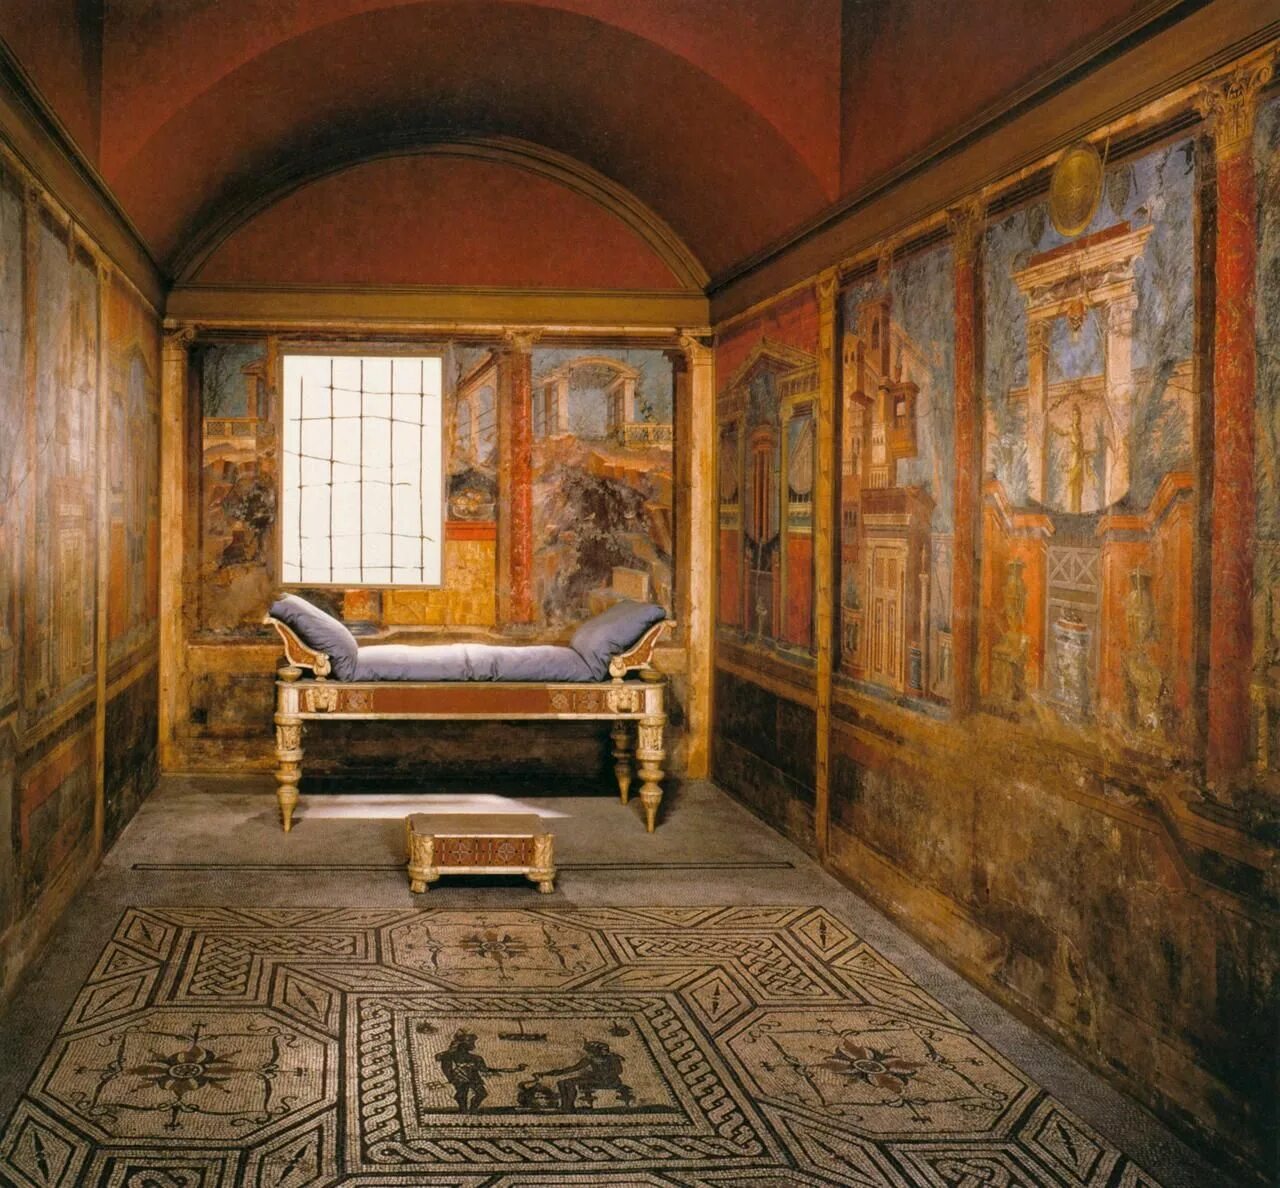 Вилла в Боскореале древний Рим. Вилла Боскореале фрески. Философ фреска вилла в Боскореале 1 век. Вилла в Боскореале фрески 3 помпейский стиль.